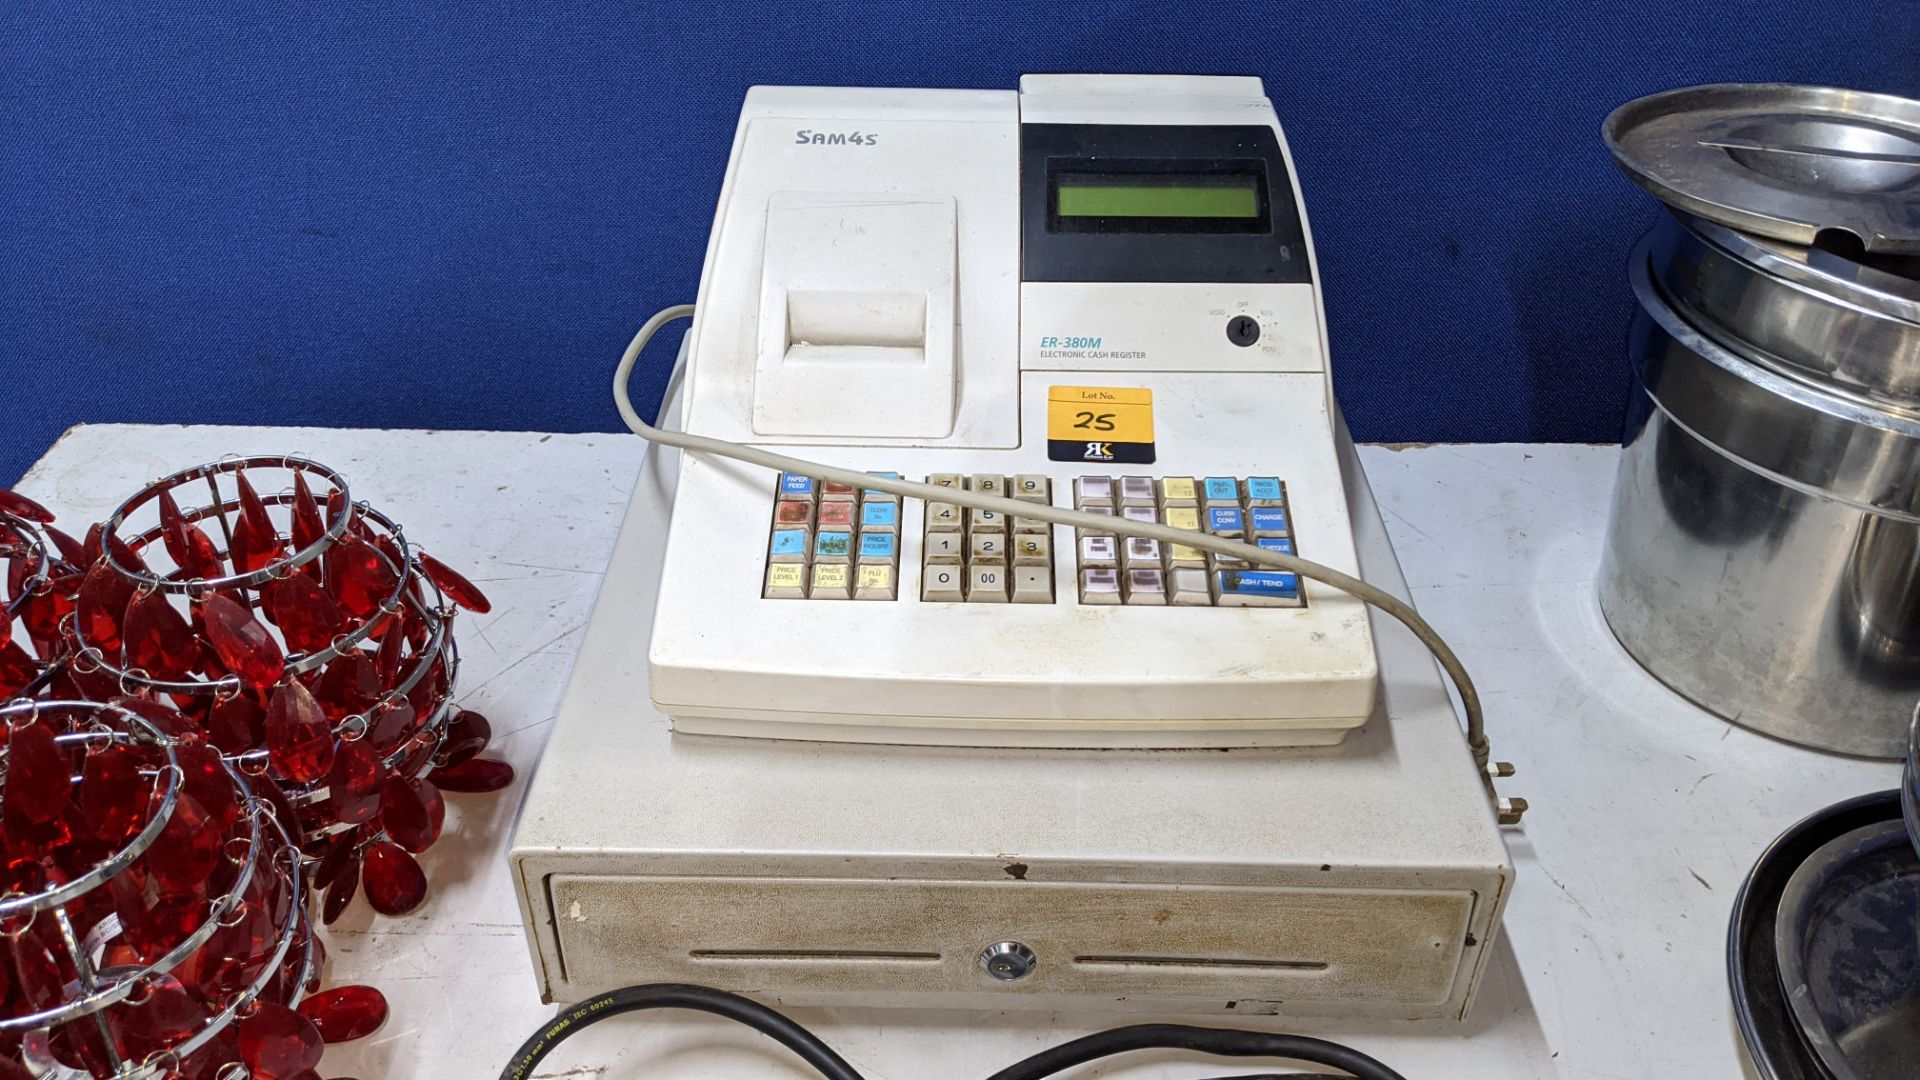 Sam4S model ER-380M electronic cash register - Image 2 of 3